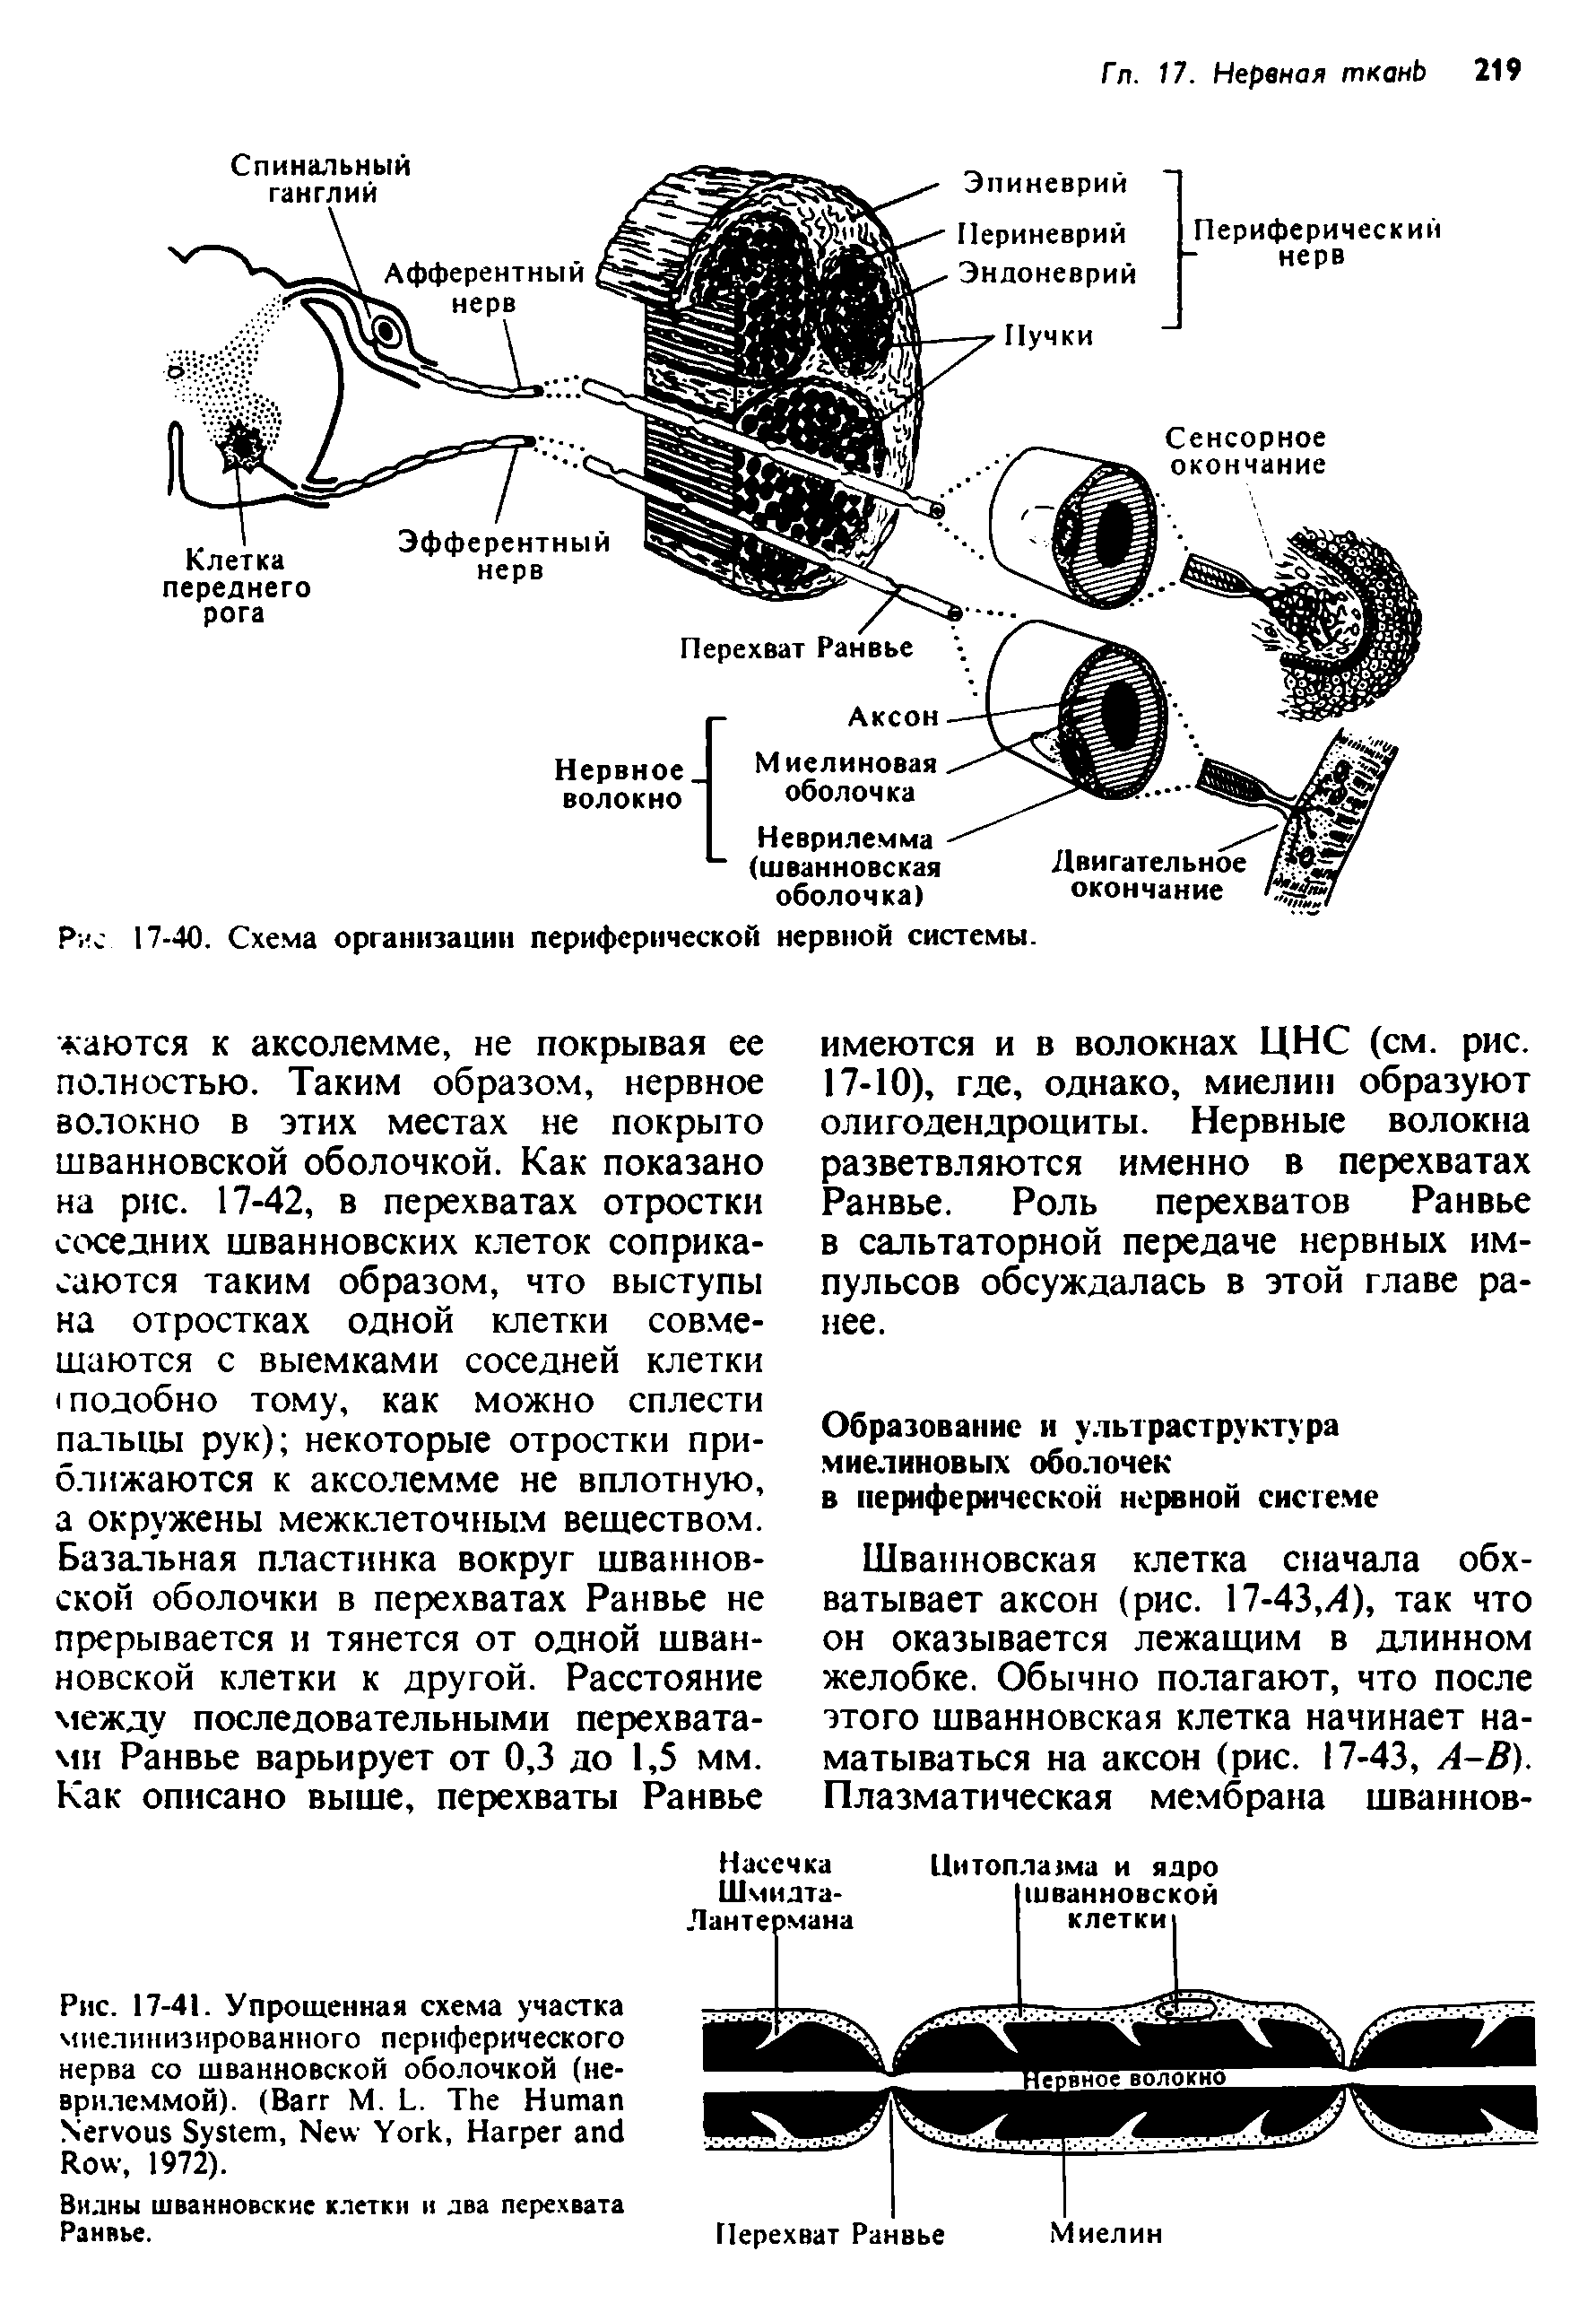 Рис. 17-41. Упрощенная схема участка миелинизированного периферического нерва со шванновской оболочкой (неврилеммой). (B М. L. T H N S , N Y , H R , 1972).